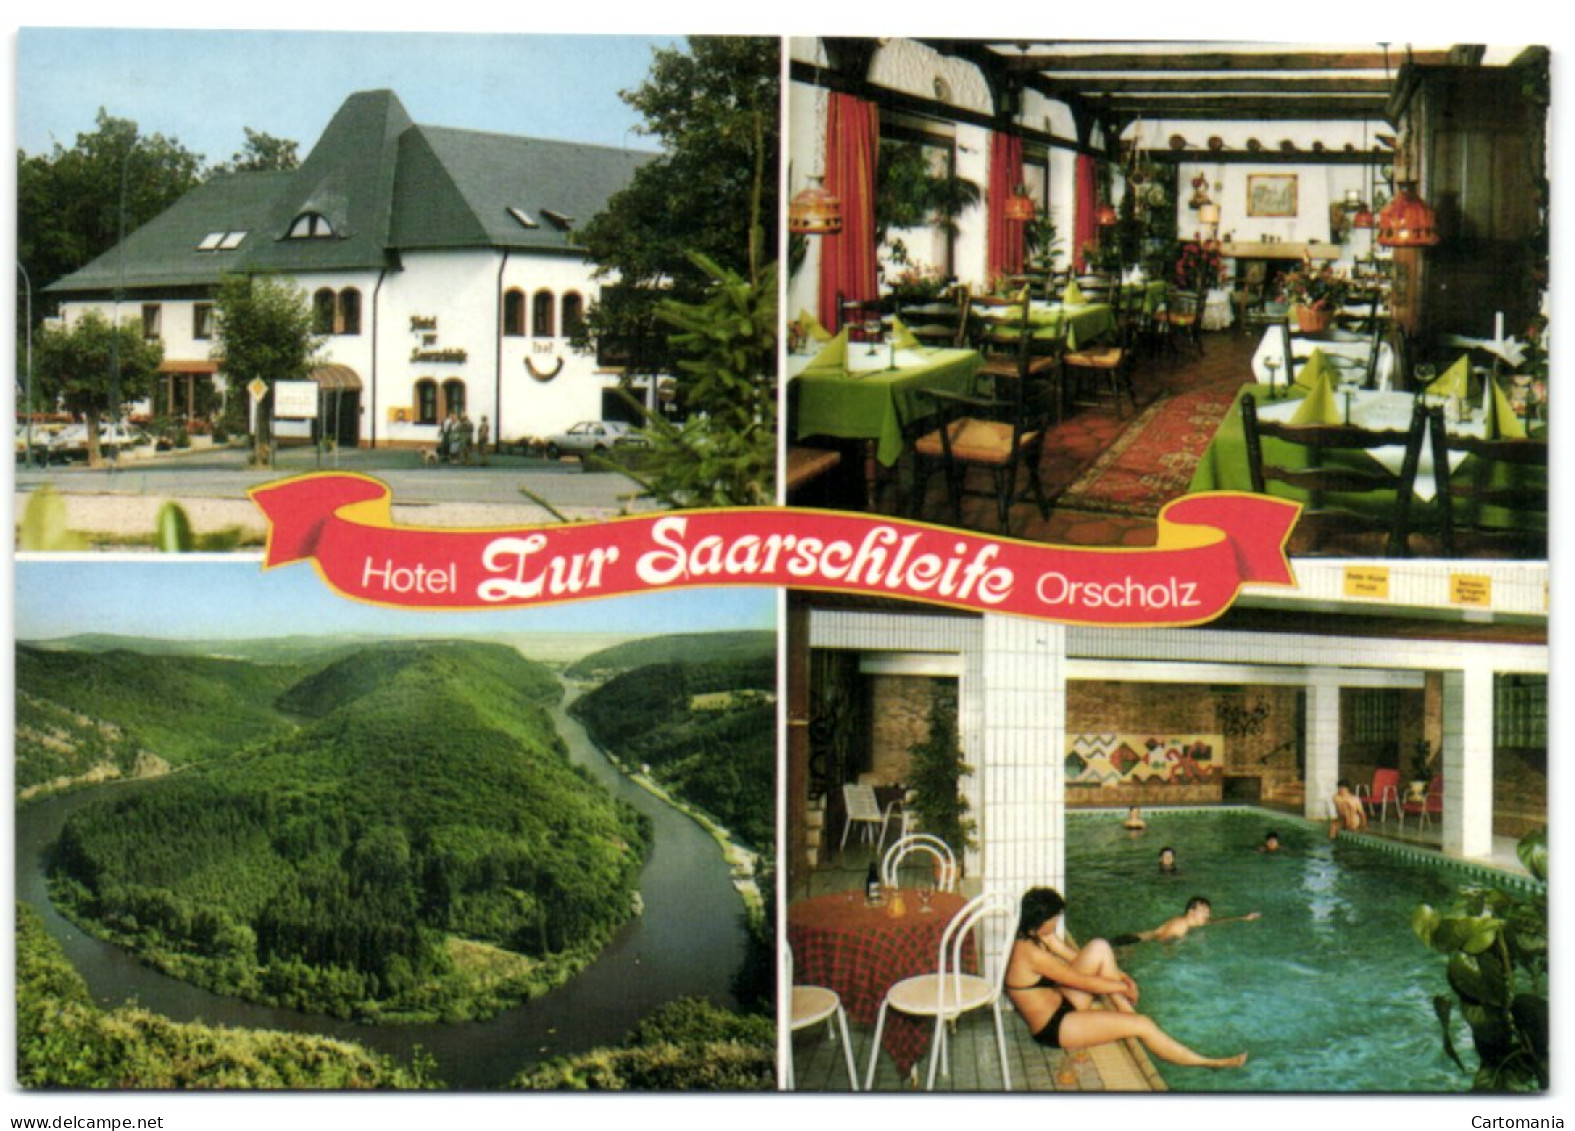 Mettlach-Orscholz - Hotel Zur Saarschleife - Kreis Merzig-Wadern